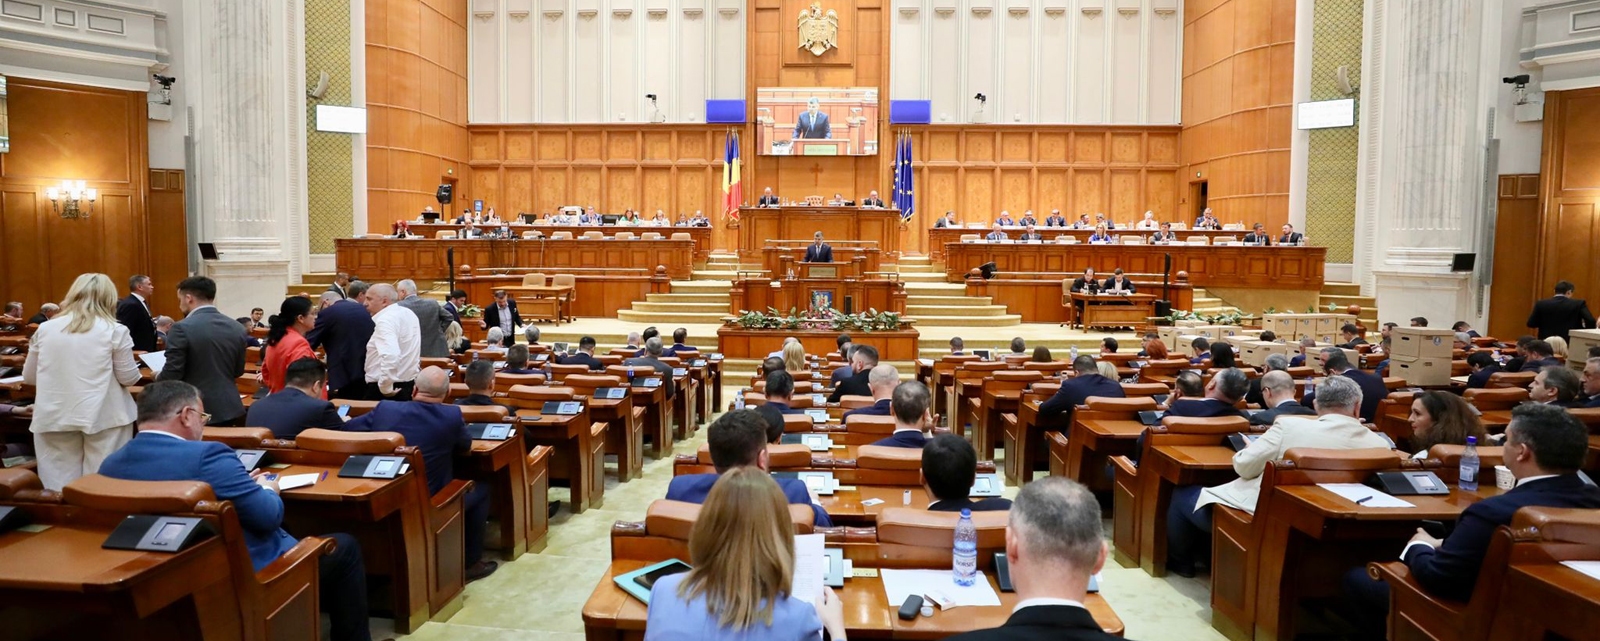 Parlament: Măsuri pentru implementarea legii de reducere a cheltuielilor - 25anisuaa-1702311369.jpg